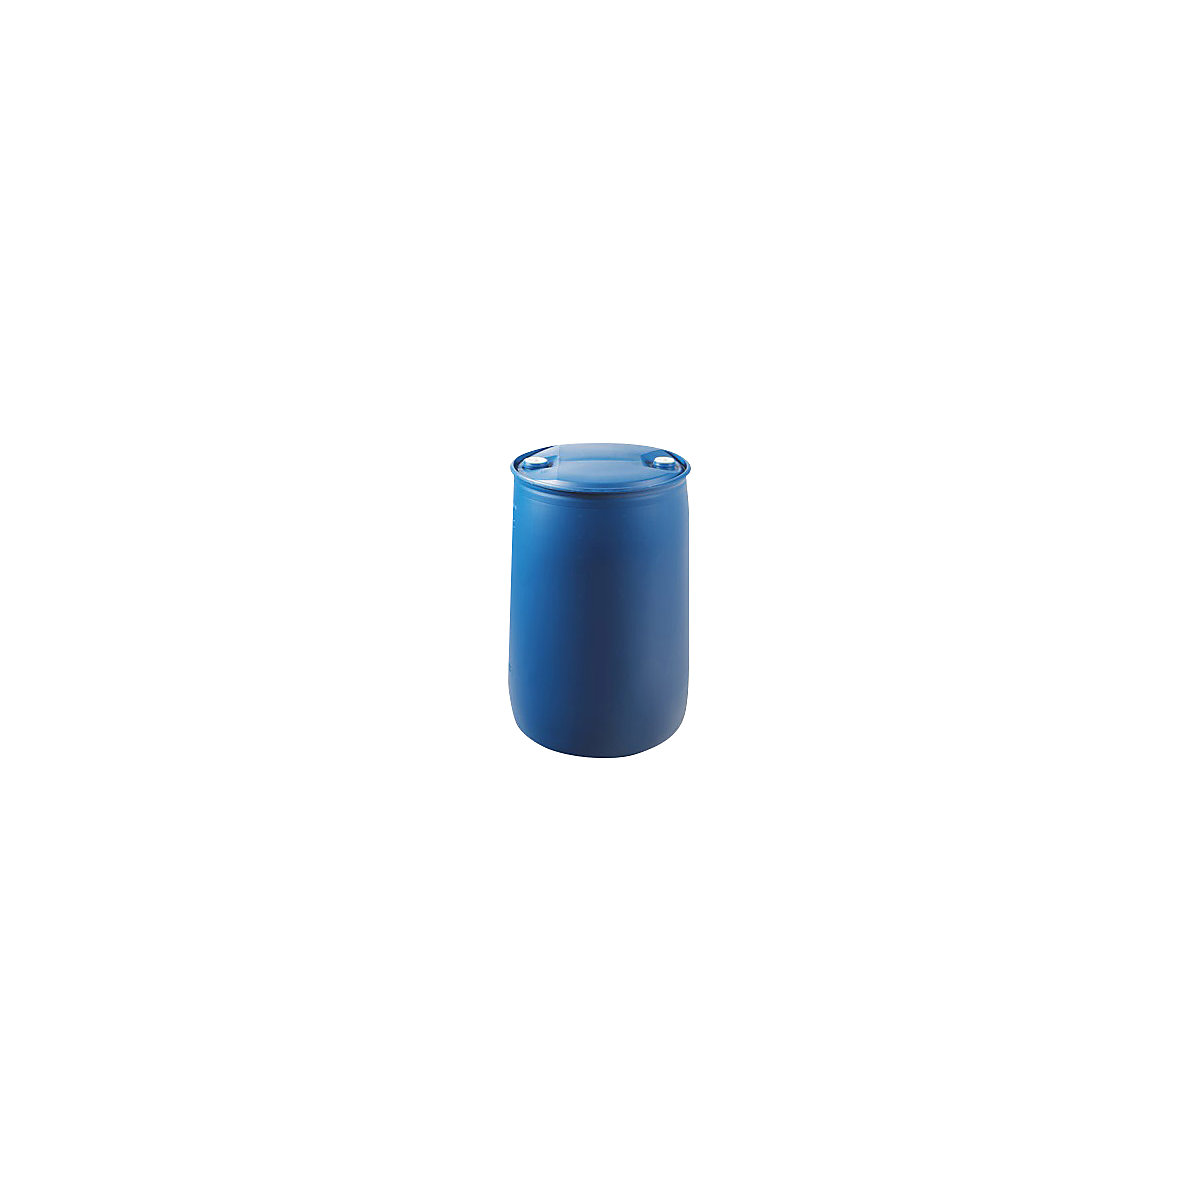 Rögzített tetejű hordó (L-gyűrűs hordó), kék, térfogat 220 l, magasság 935 mm-1